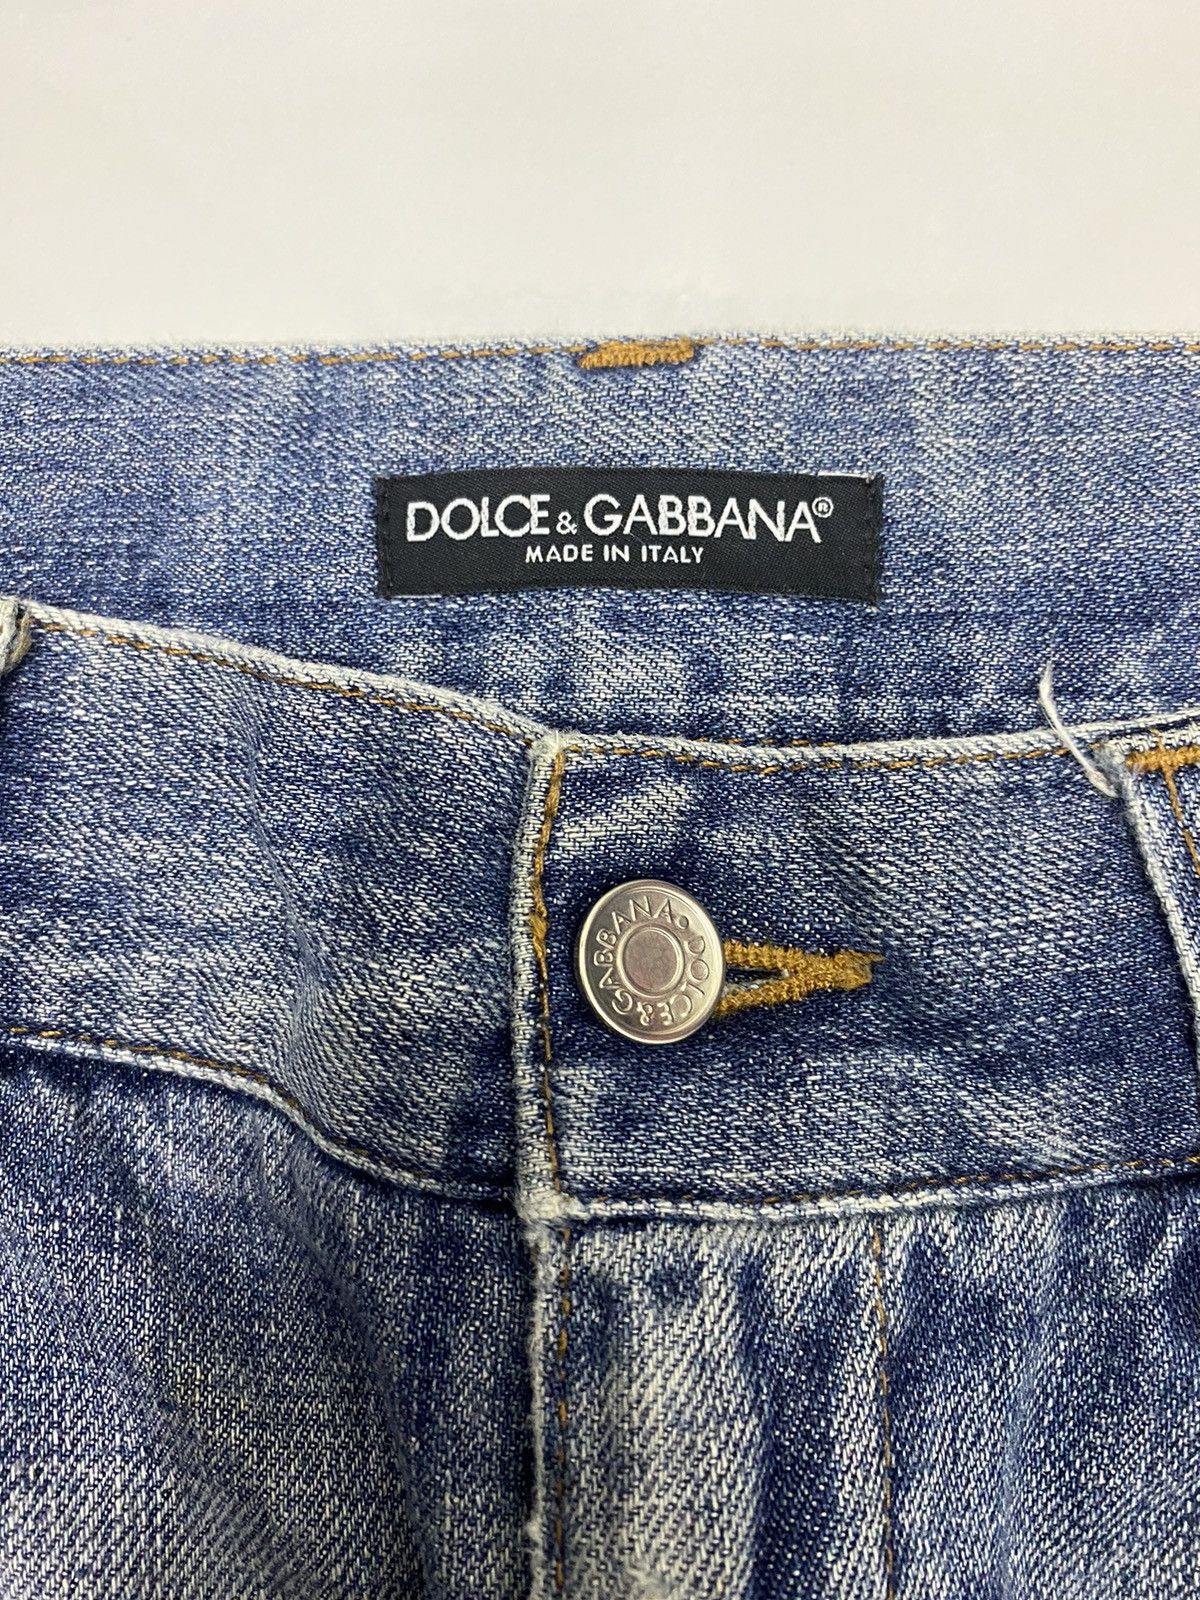 Dolce & Gabbana DOLCE & GABBANA 🇮🇹 LOW RISE DISTRESSED DENIM JEANS Size US 32 / EU 48 - 7 Thumbnail